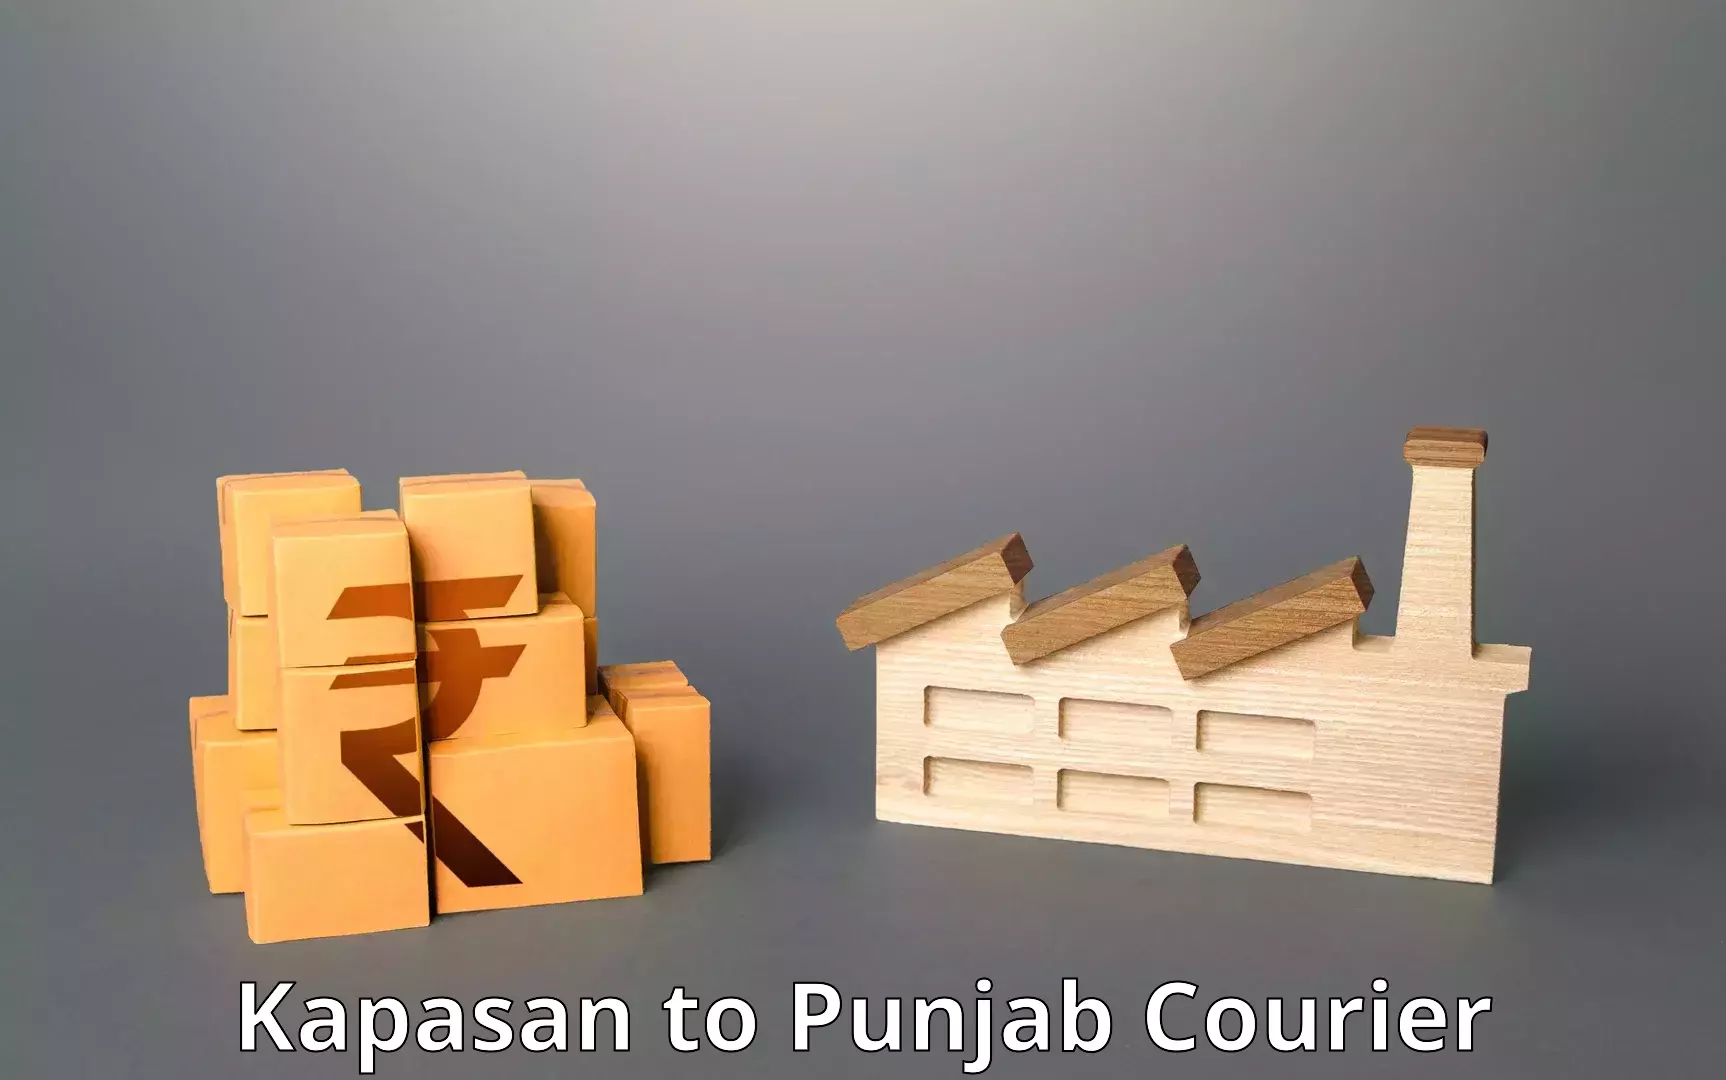 Online courier booking Kapasan to Punjab